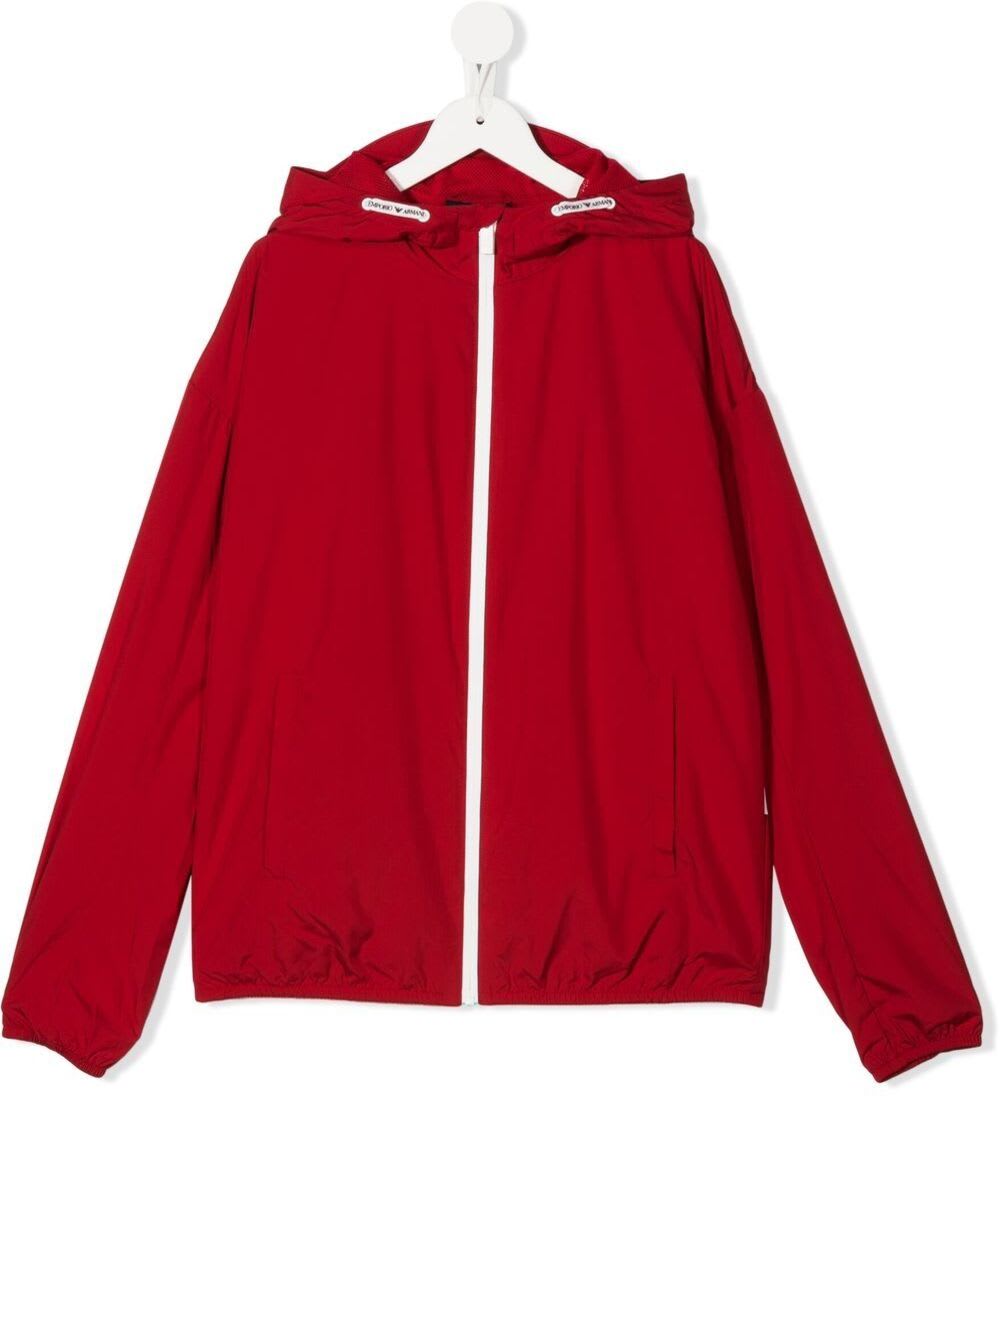 Emporio Armani Kids Boys Red Nylon Jacket With Logo Print